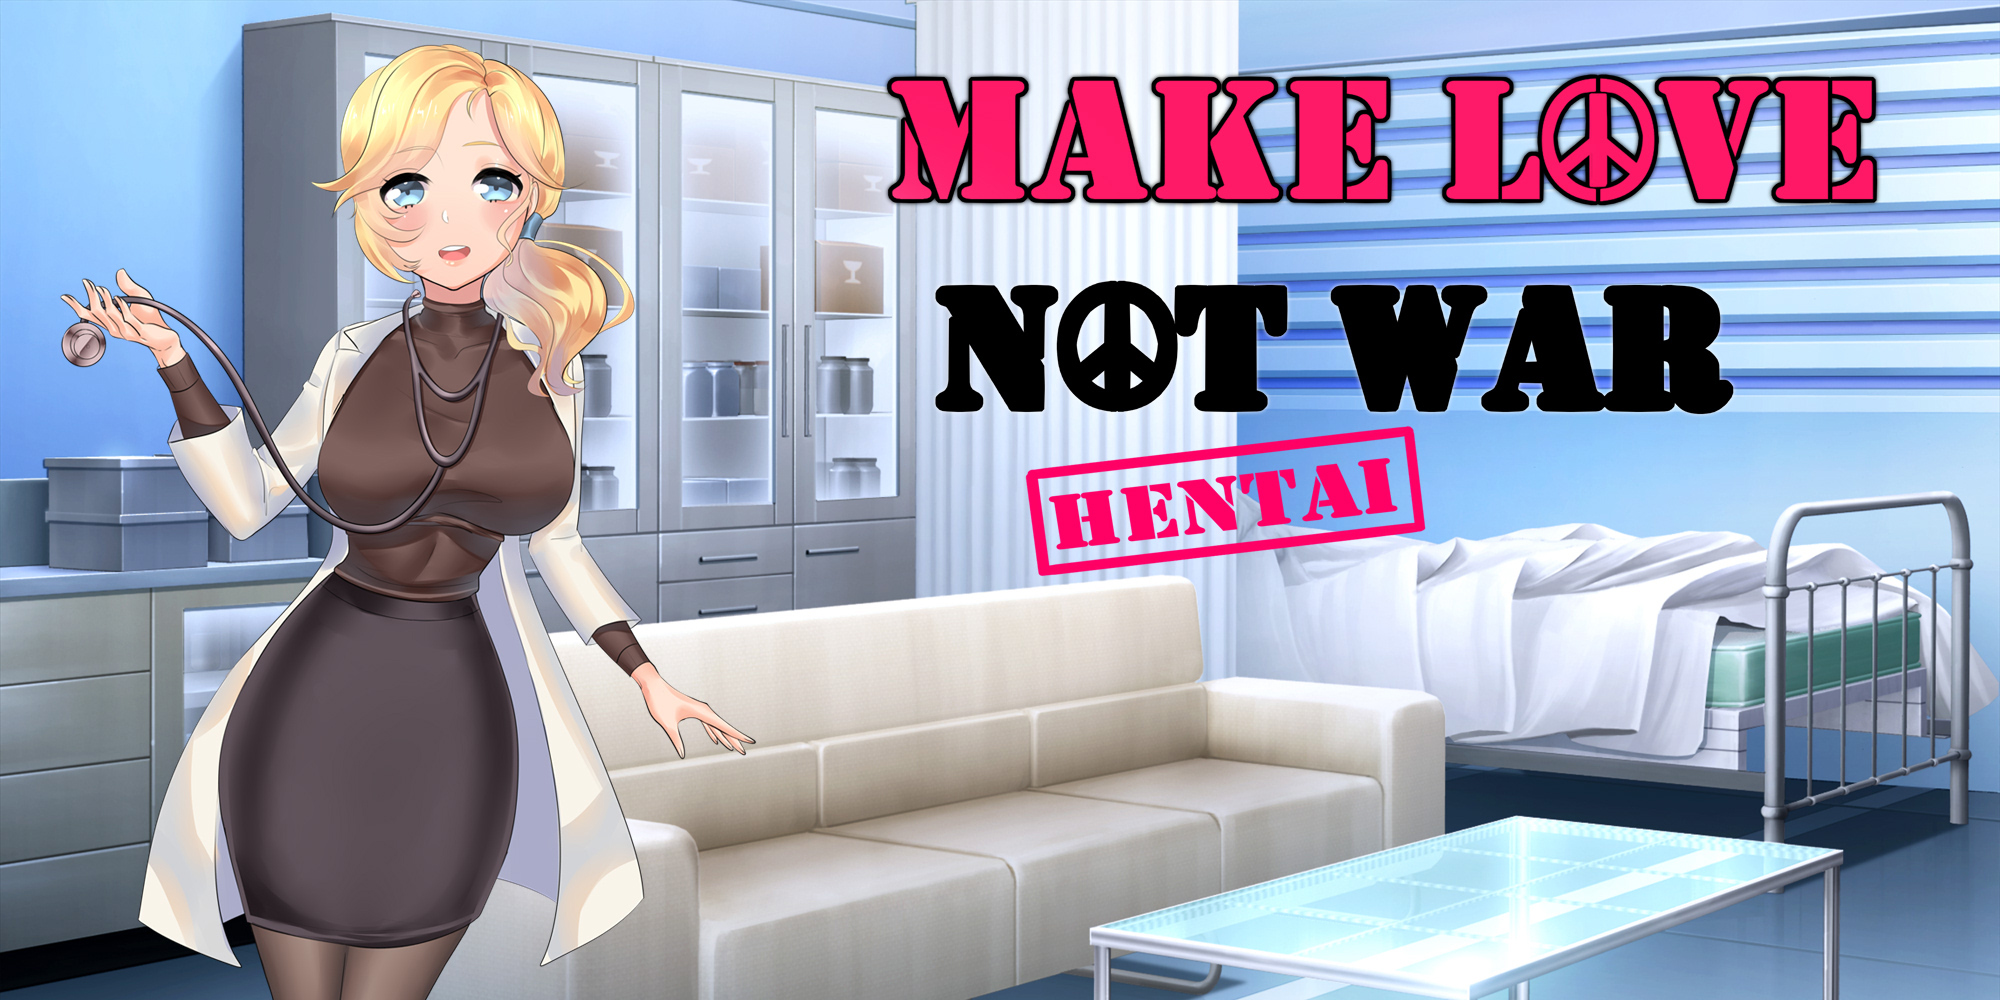 Make love not war hentai